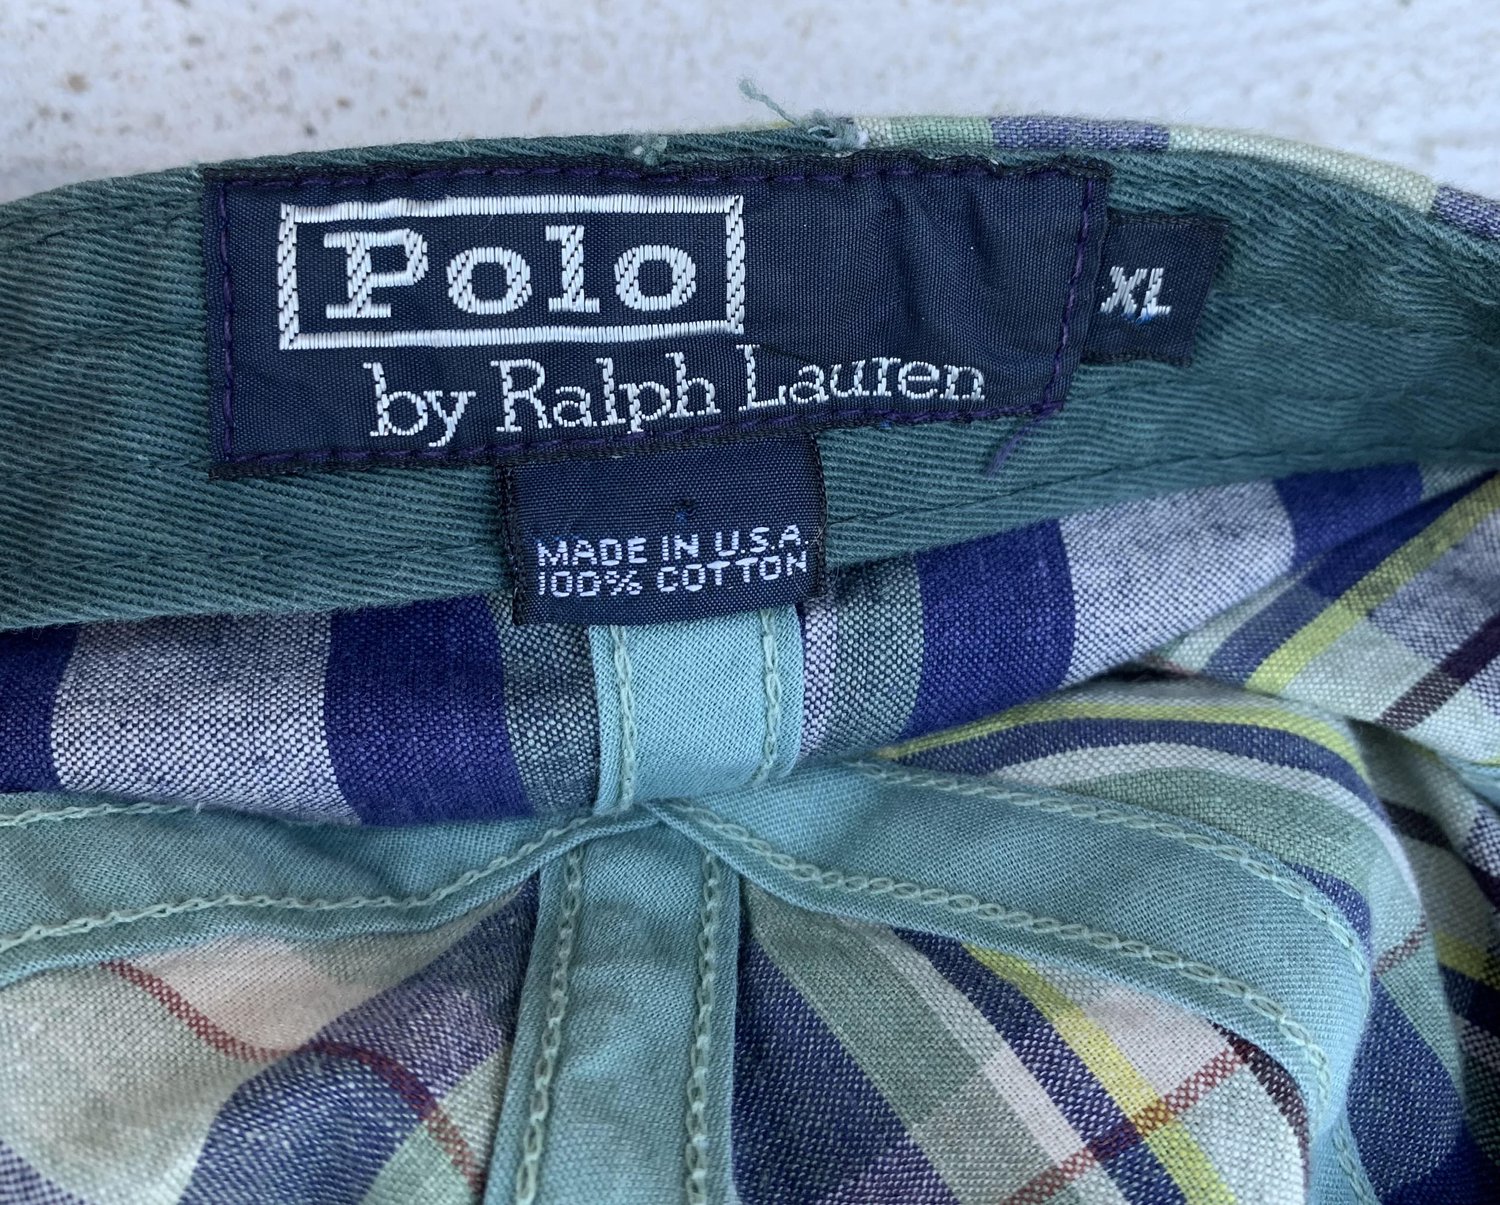 Vintage Polo Ralph Lauren Colorful Plaid Hat (Size XL) — Roots